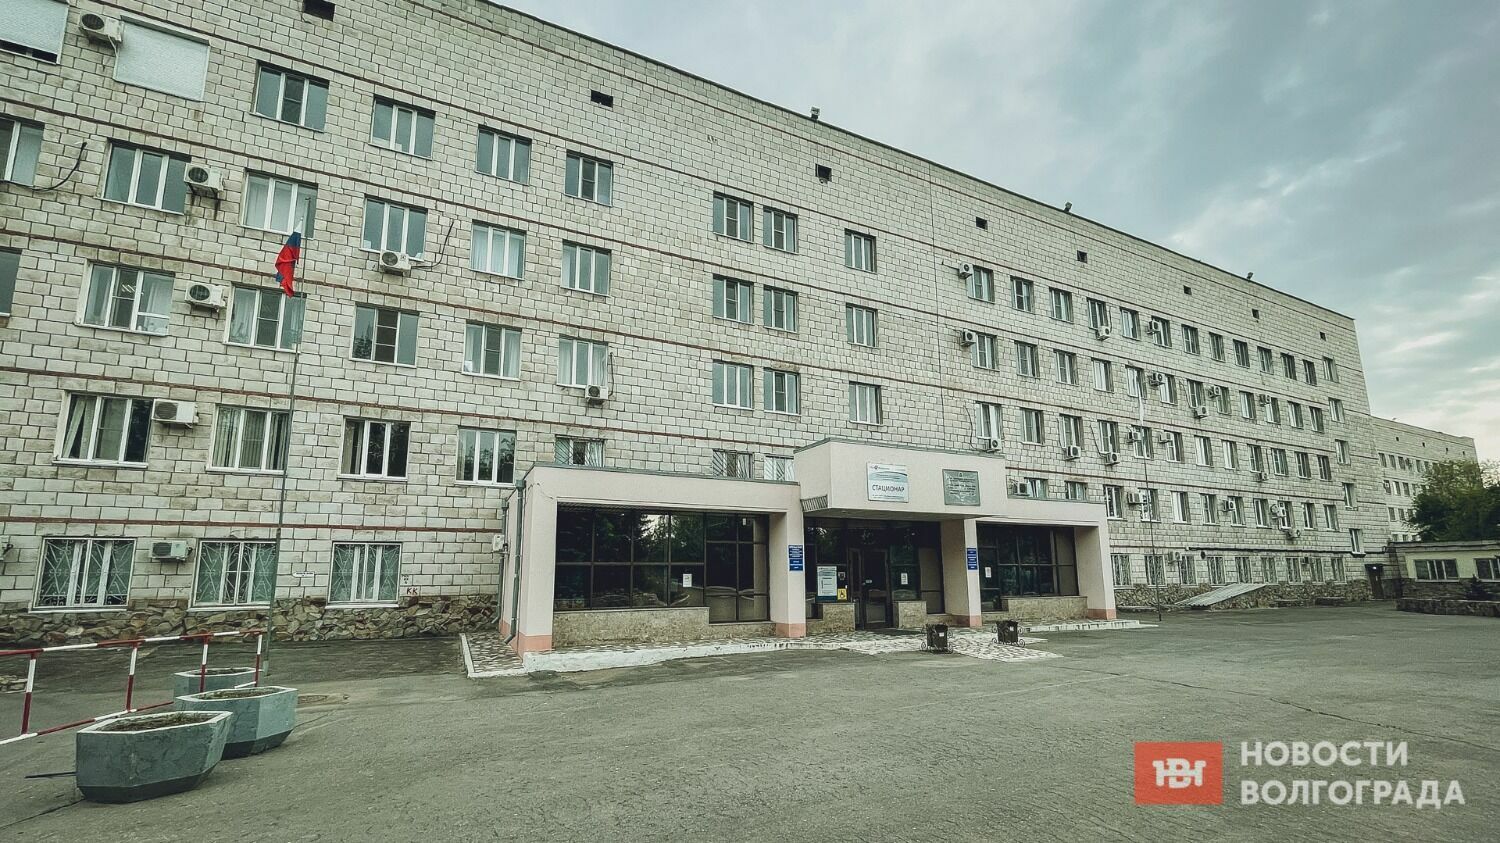 На ул. Калинина в Ворошиловском районе, расположен крупный медцентр — Волгоградская областная клиническая больница №3